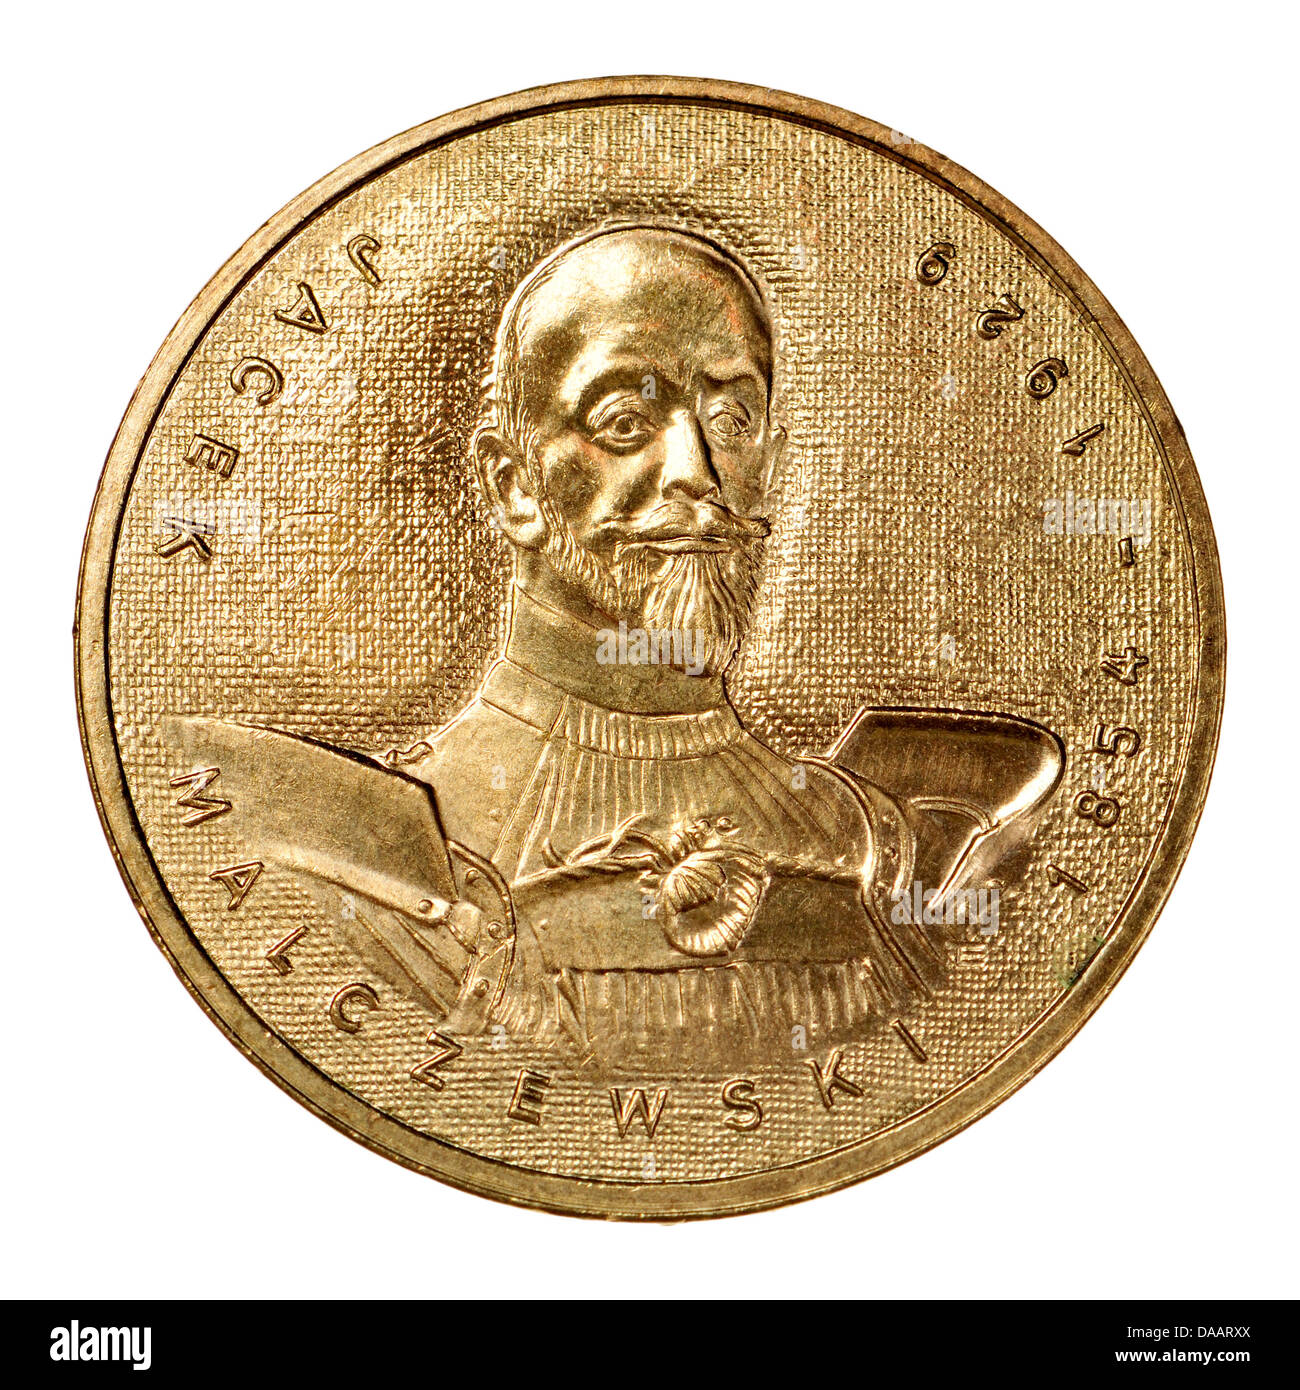 2zl polonais monnaie commémorative dans 'Nordic Gold'. Jacek Malczewski (1854-1929) peintre polonais Banque D'Images